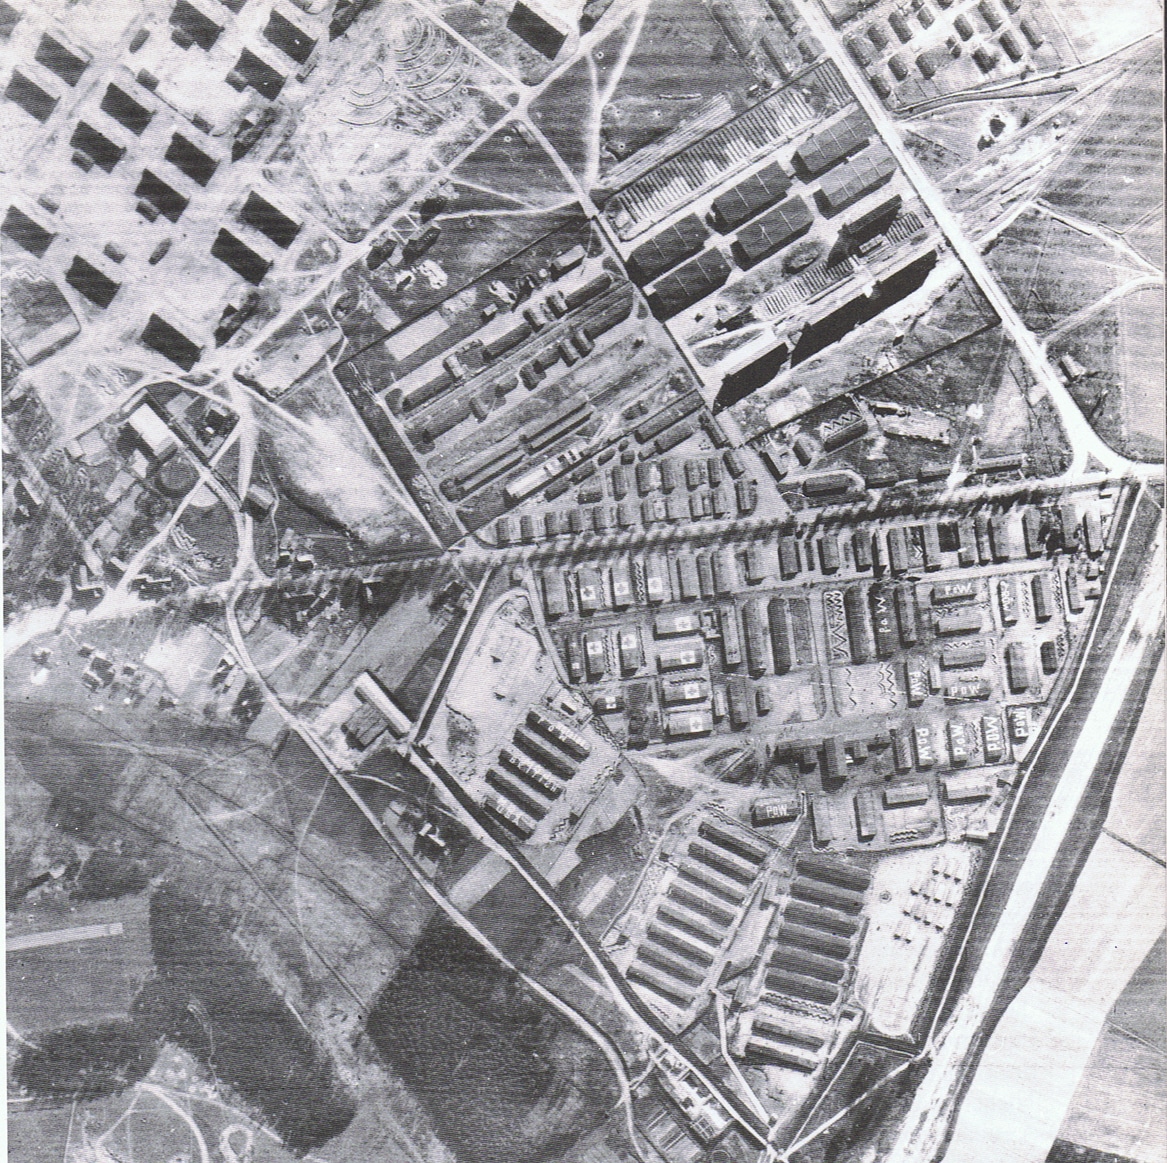 Campo de internamiento de Oggersheim en la región del Palatinado el 11 de mayo de 1945